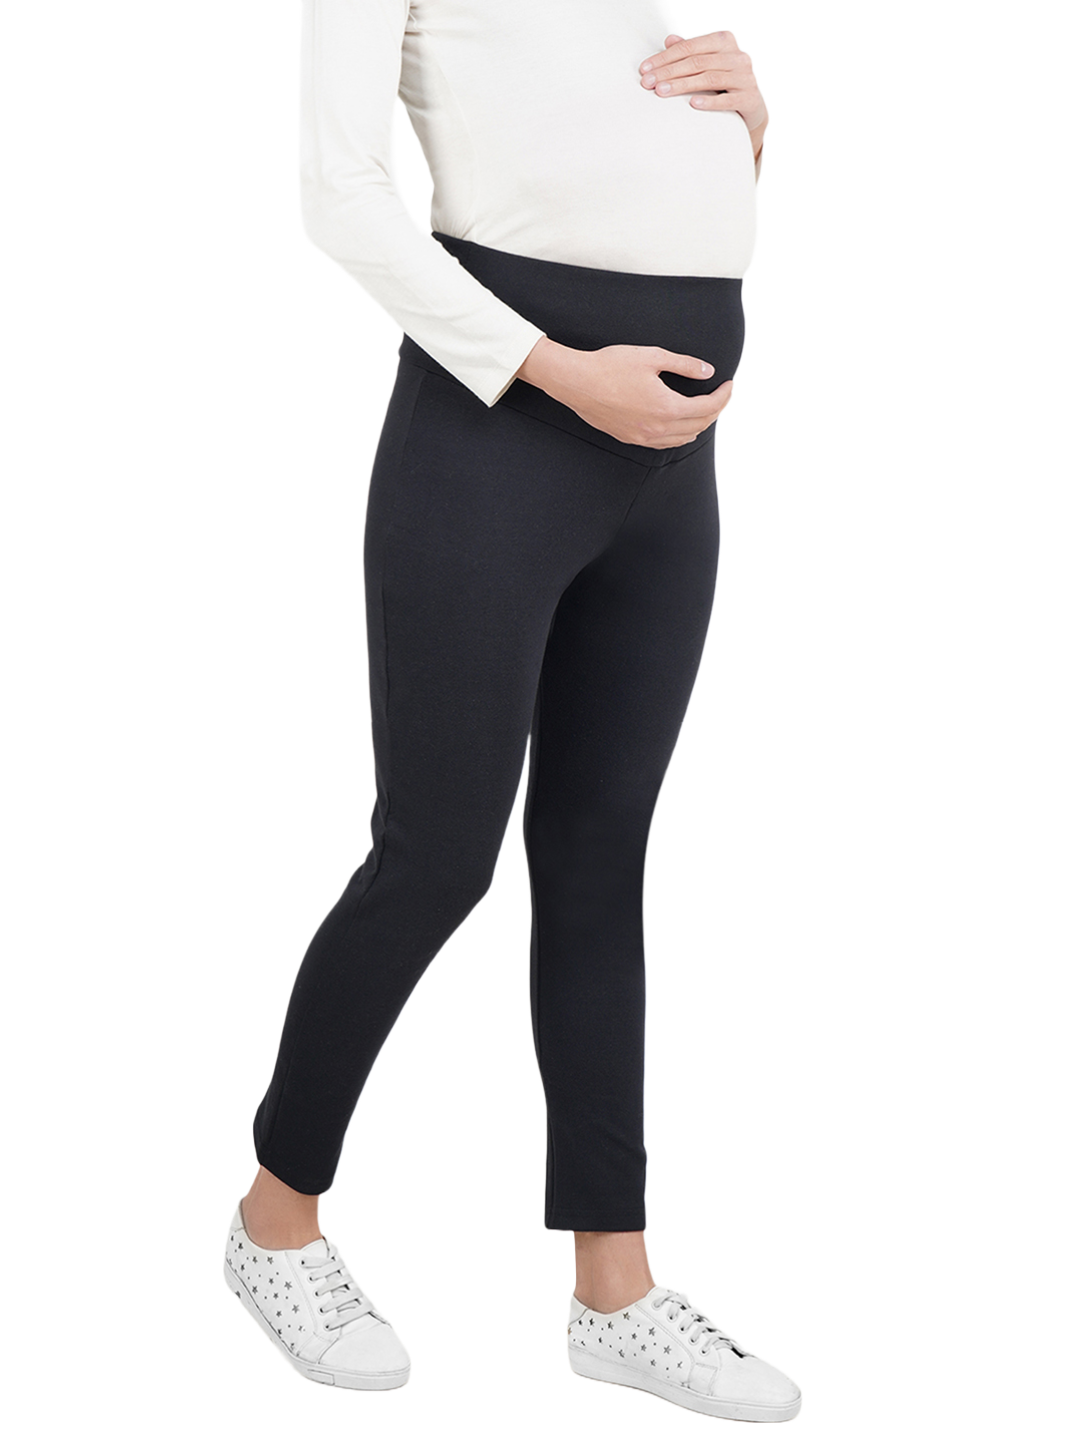 Maternity Pants/Leggings for Pregnant Women